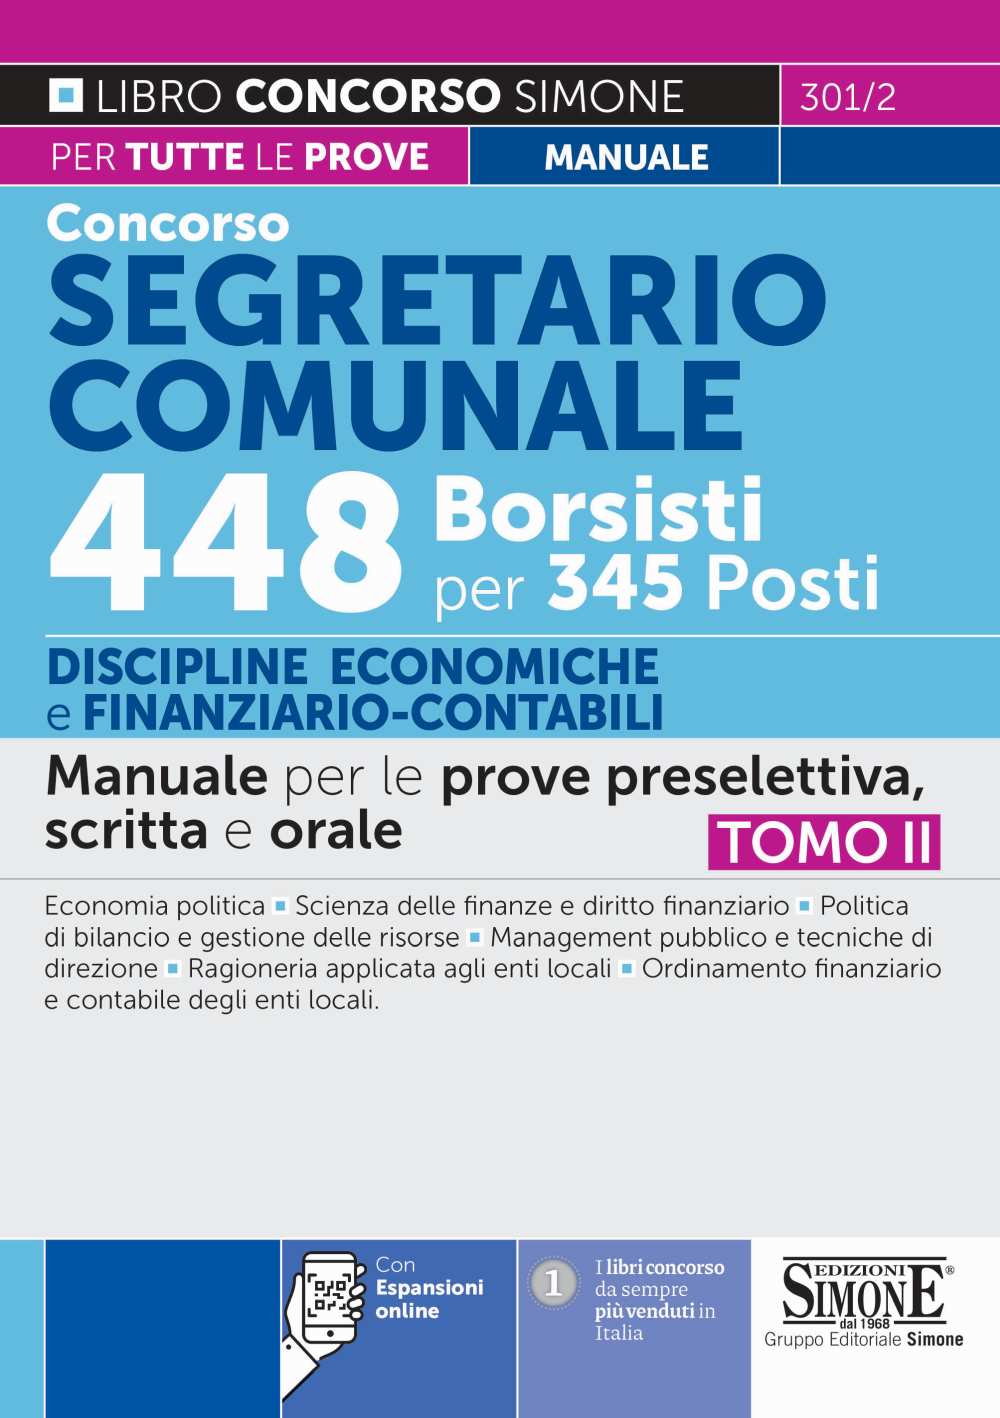 Concorso Segretario Comunale 448 Borsisti per 345 Posti - TOMO II Discipline Economiche e Finanziario-Contabile - Manuale - 301/2